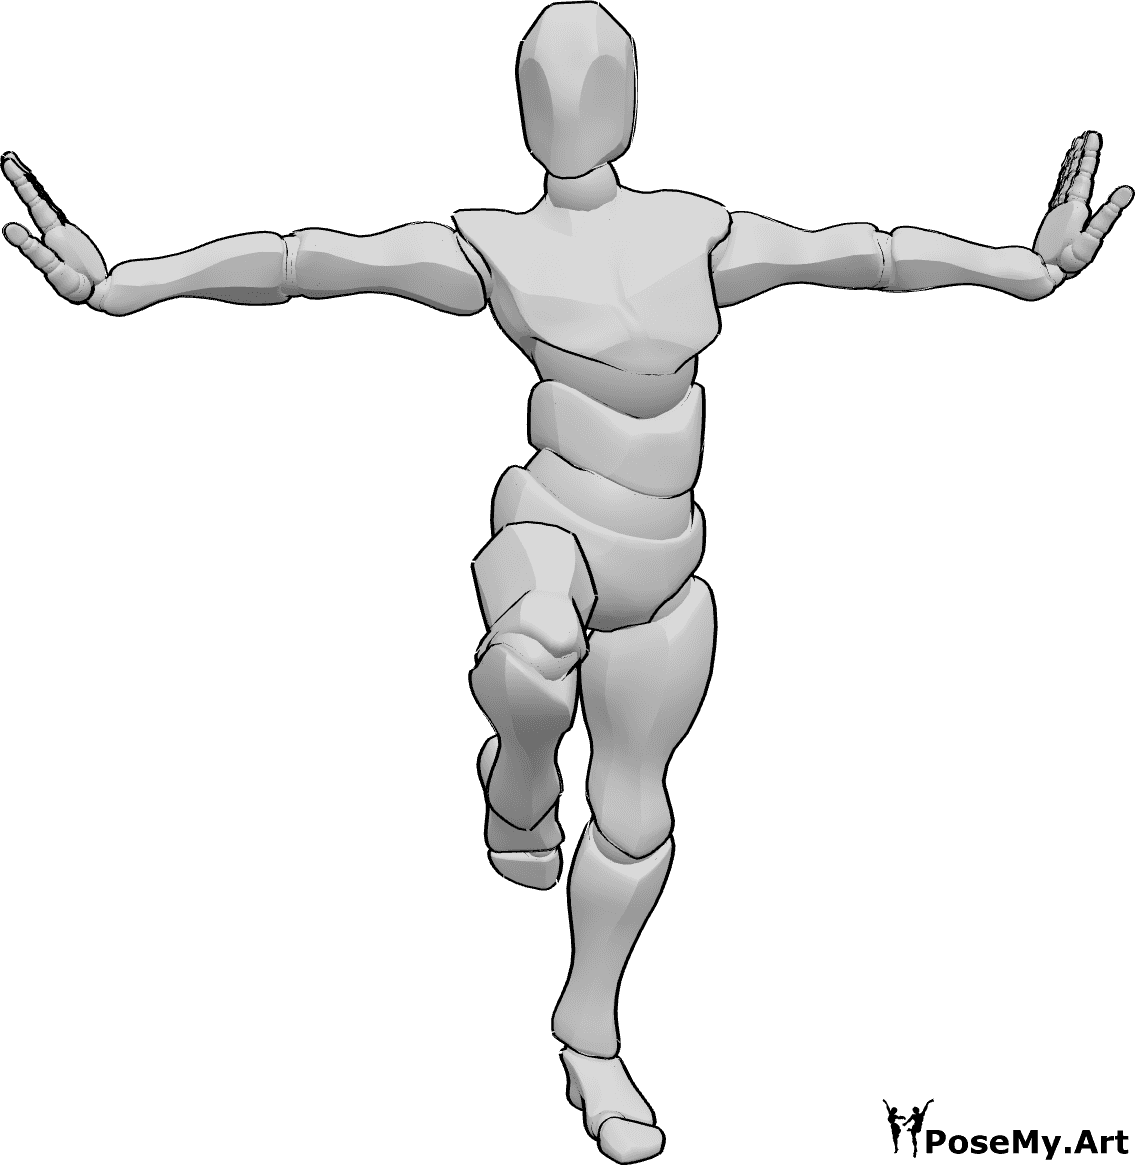 Riferimento alle pose- Posizione della gamba sinistra in piedi - Uomo in piedi su una gamba sola in posa kung fu